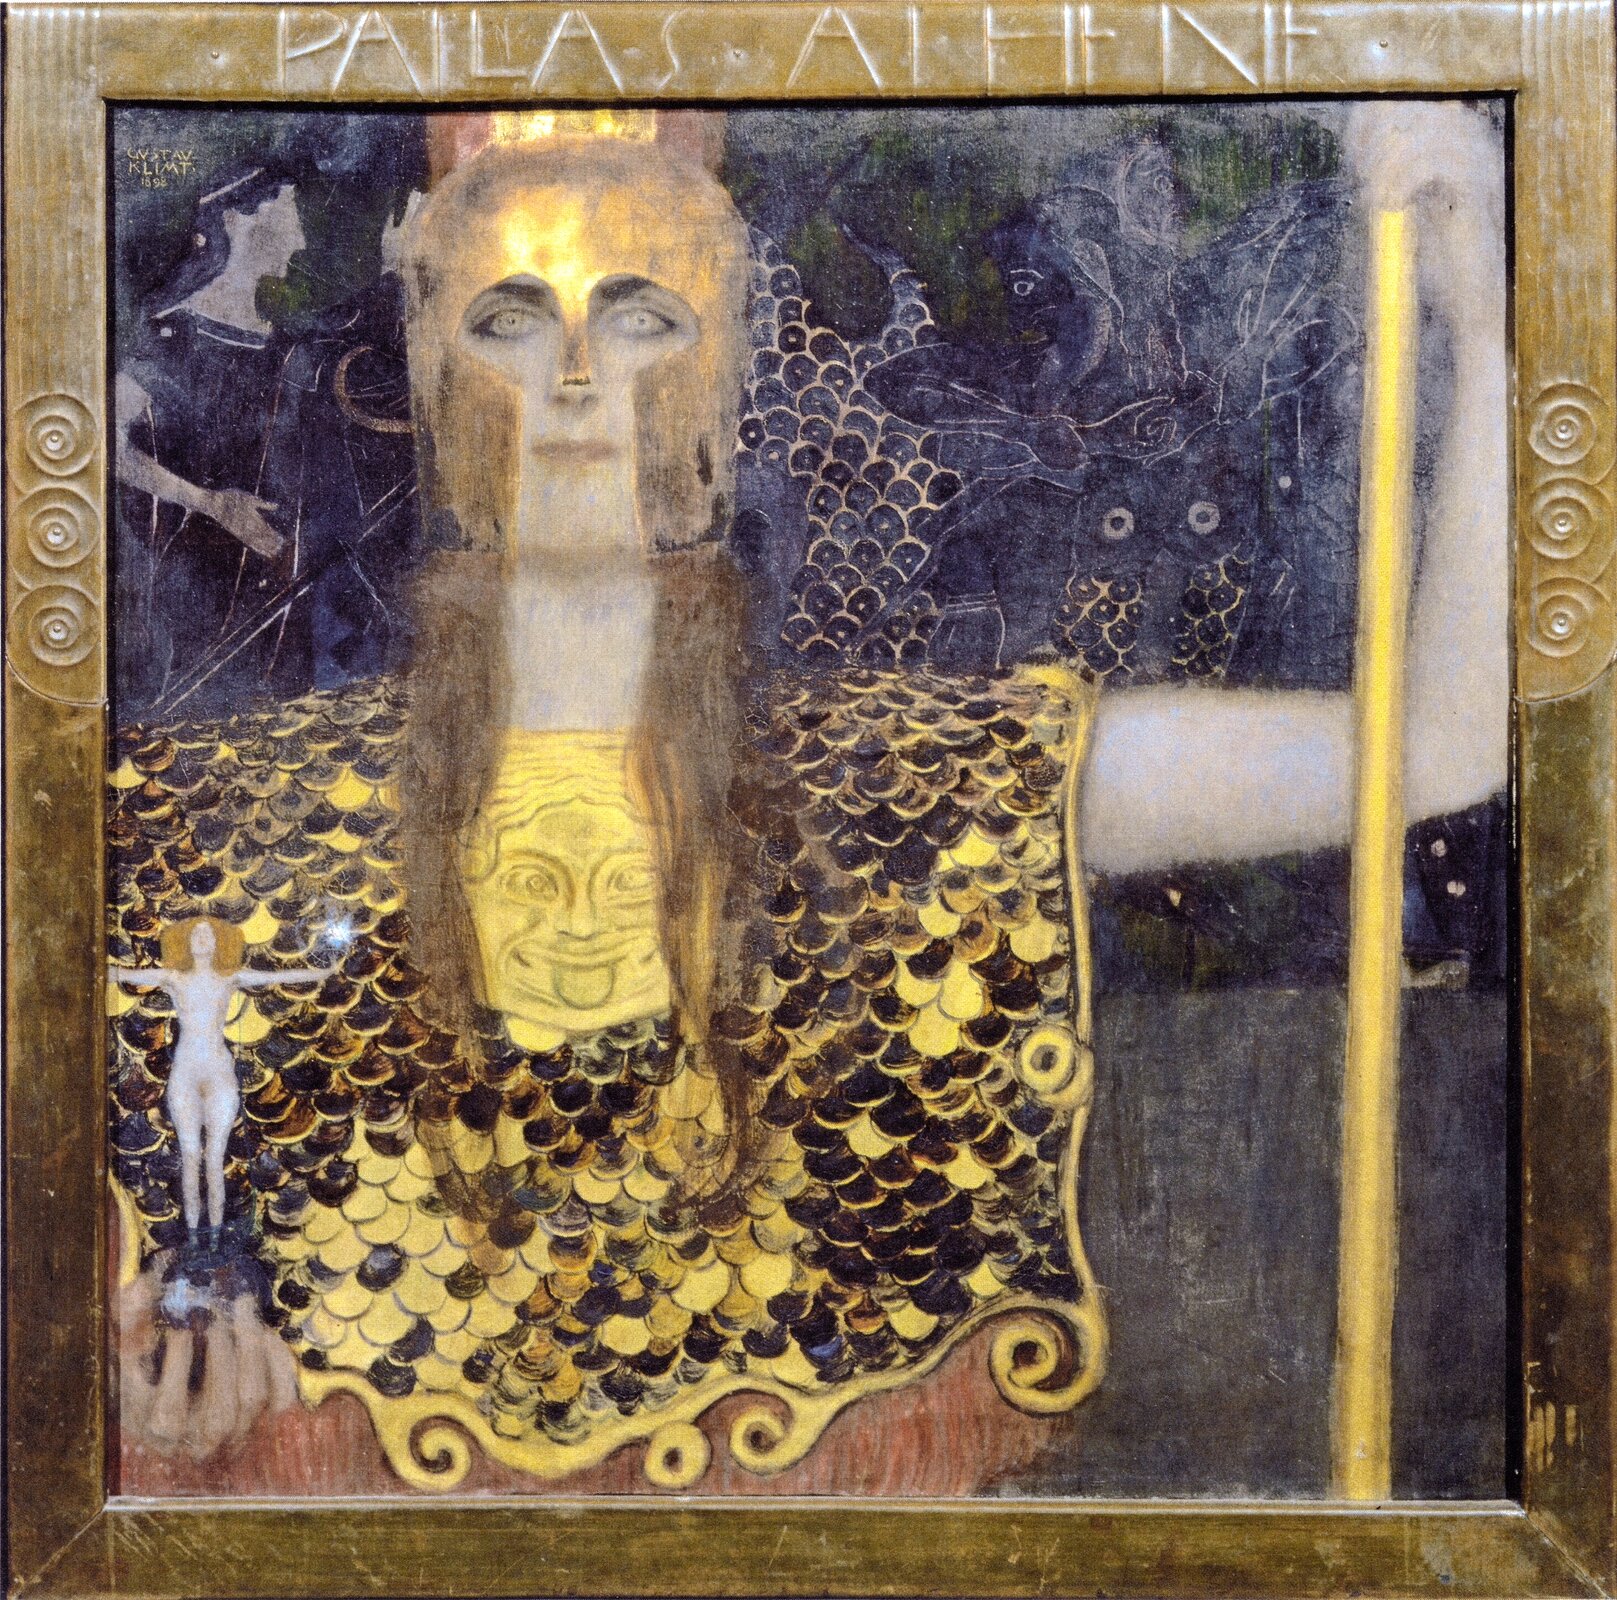 Na ilustracji przedstawiono obraz Gustawa Klimta zatytułowany „Minerwa lub Pallas Atena”. W centrum widnieje postać Ateny. Ubrana jest w złoty hełm i złotą zbroję. W jednej ręce trzyma drzewce, natomiast w drugiej statuetkę kobiety z szeroko rozłożonymi ramionami. Na ramieniu bogini siedzi sowa. Na obrazie, nad głową Ateny, znajduje się podpis PALLAS ATHENE.